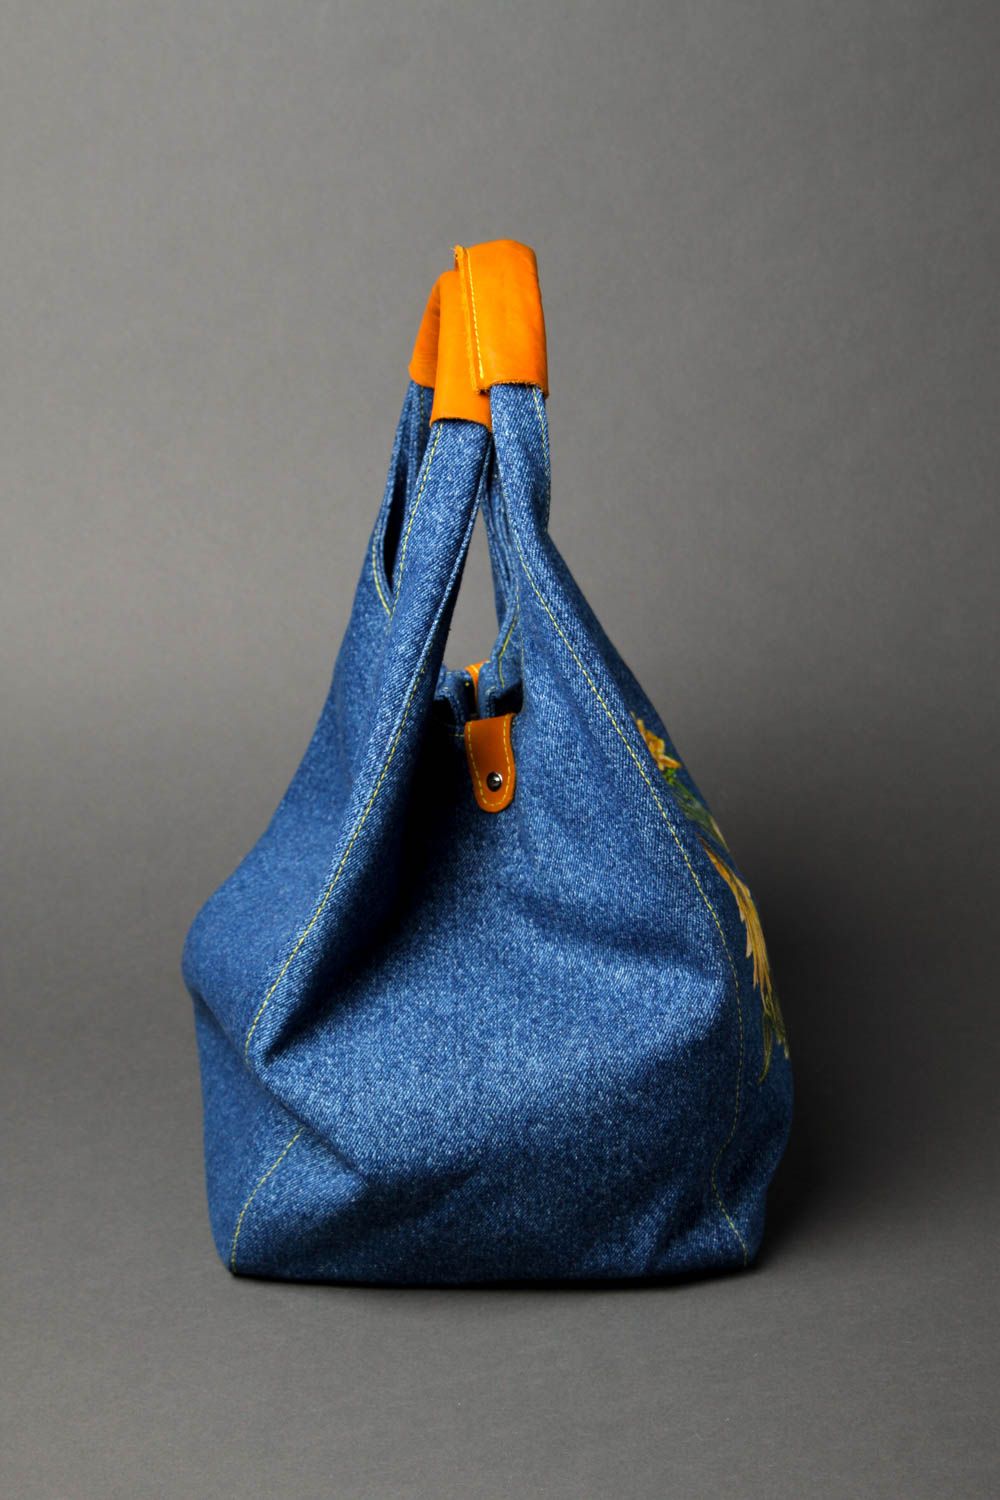 Сумка ручной работы женская сумка авторская тканевая сумка джинсовая с цветами фото 2